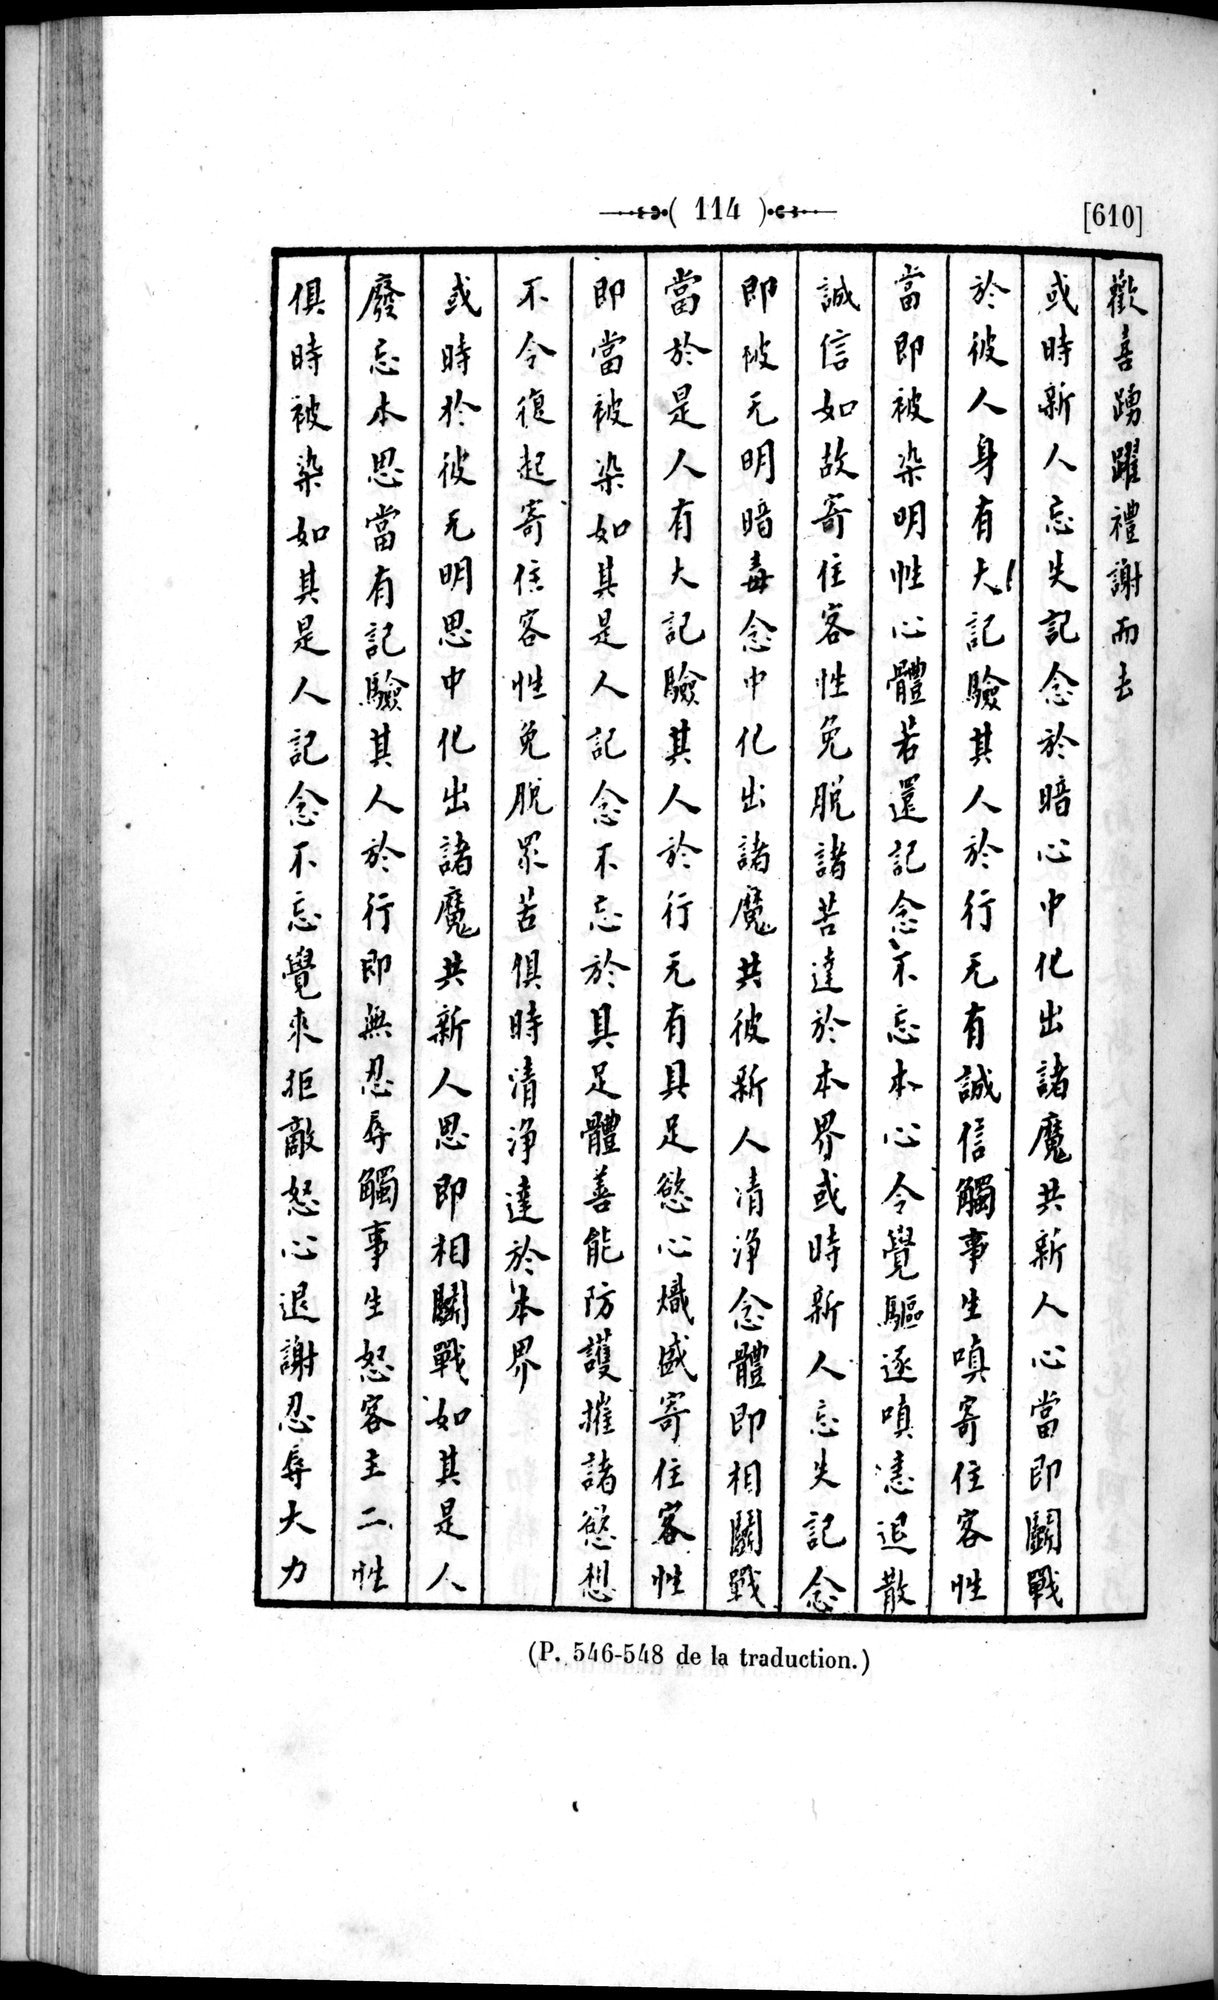 Un traité manichéen retrouvé en Chine : vol.1 / Page 124 (Grayscale High Resolution Image)